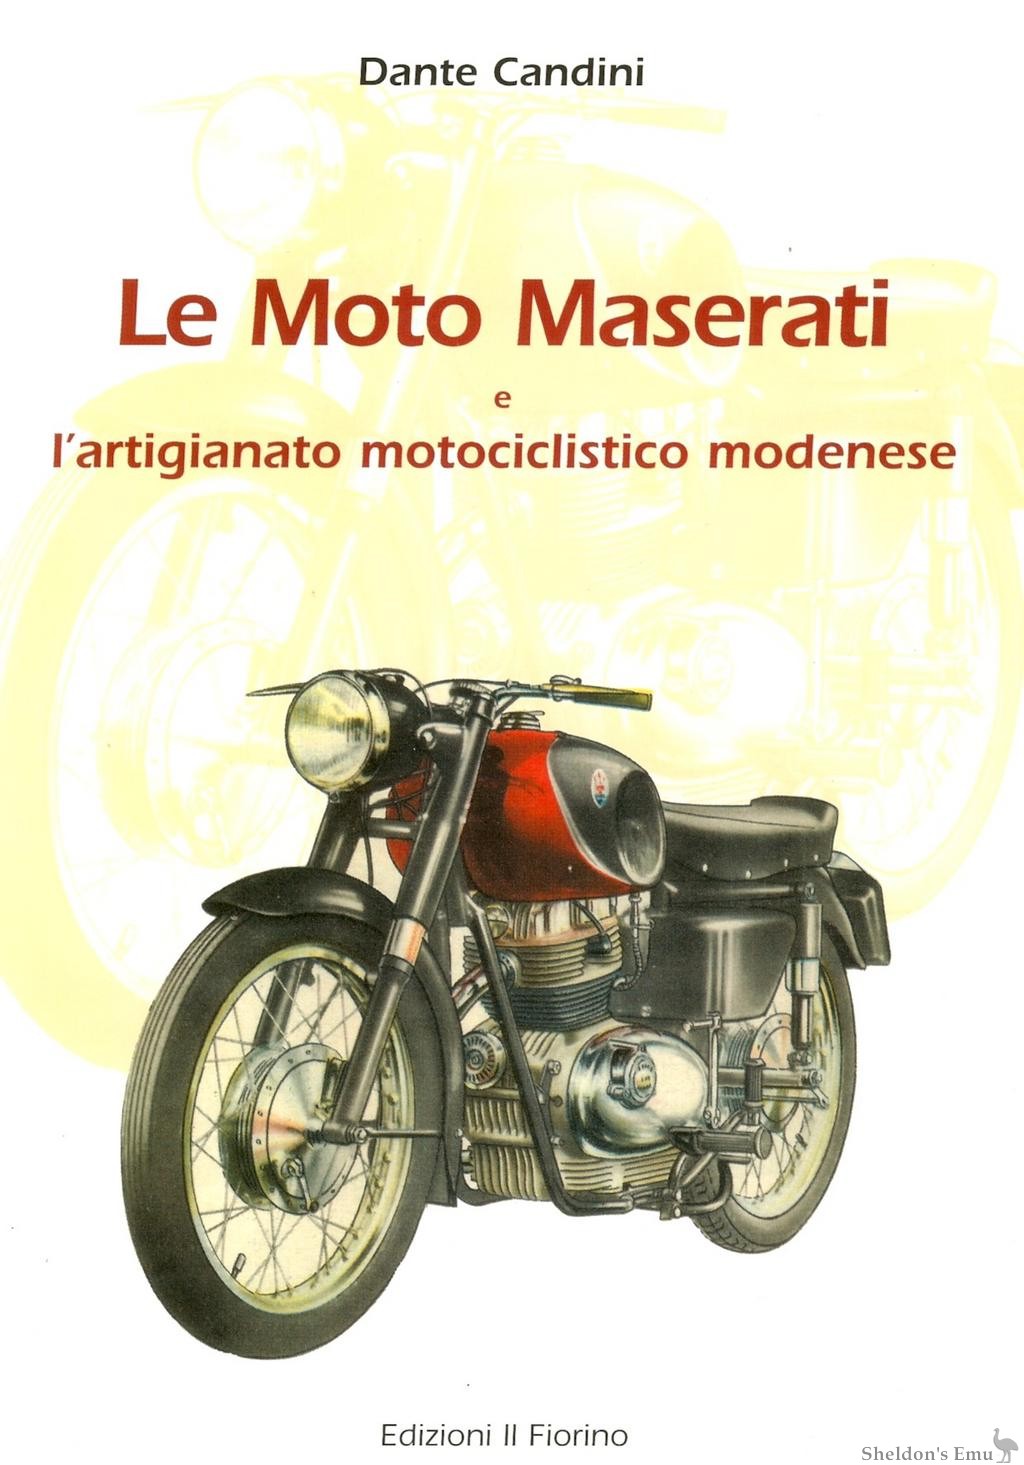 Maserati-Book.jpg